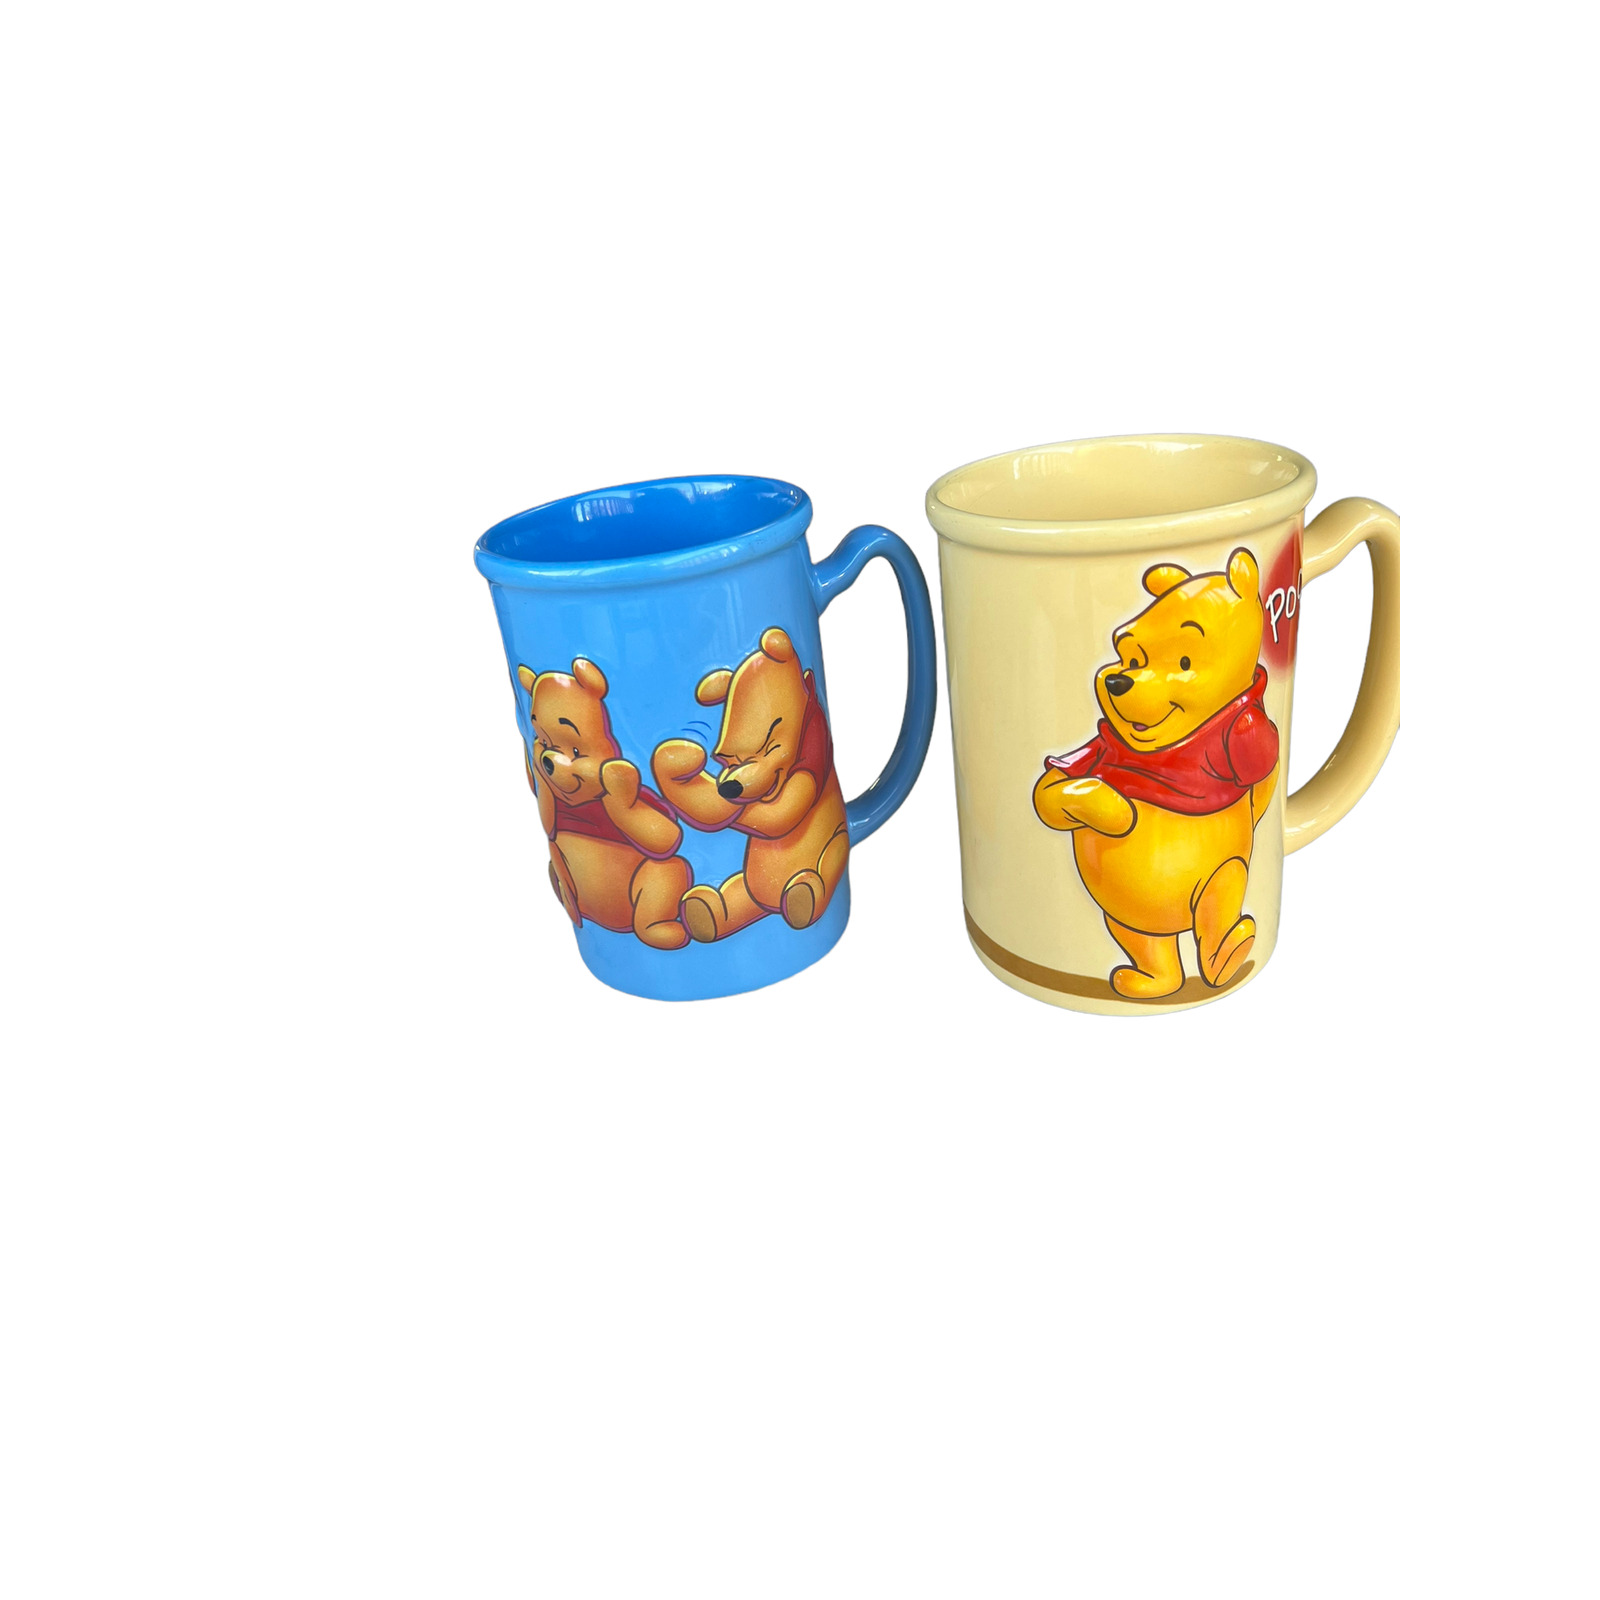 Vintage Disney Winnie the Pooh Mugs